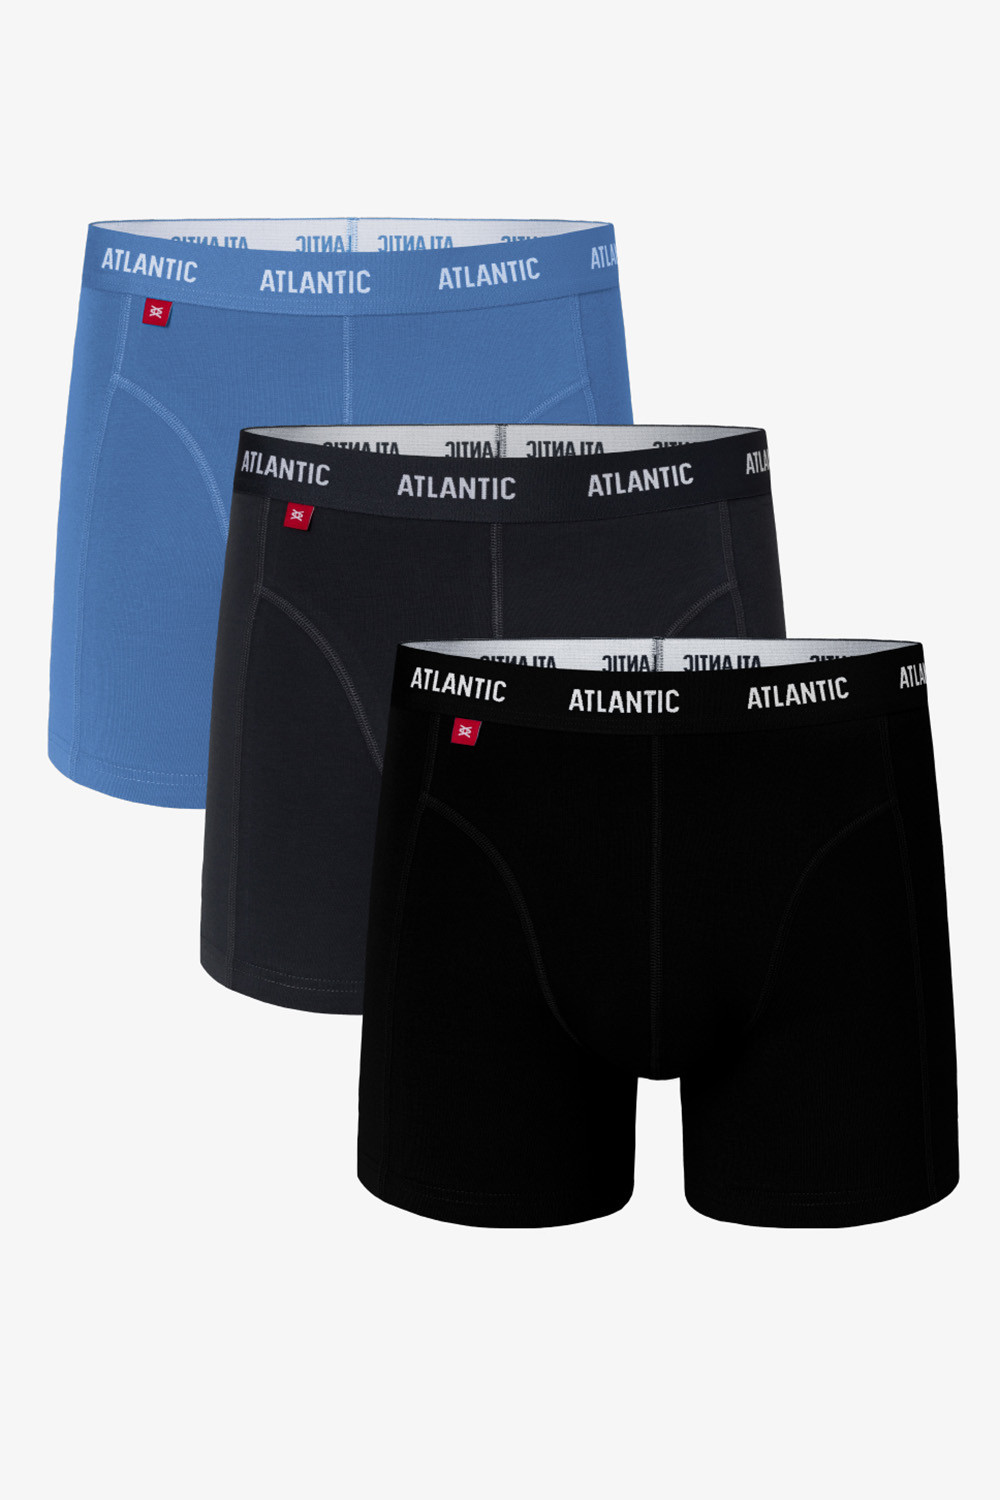 Pánske boxerky Atlantic 3MH-047 modrá/grafit/čierna xl